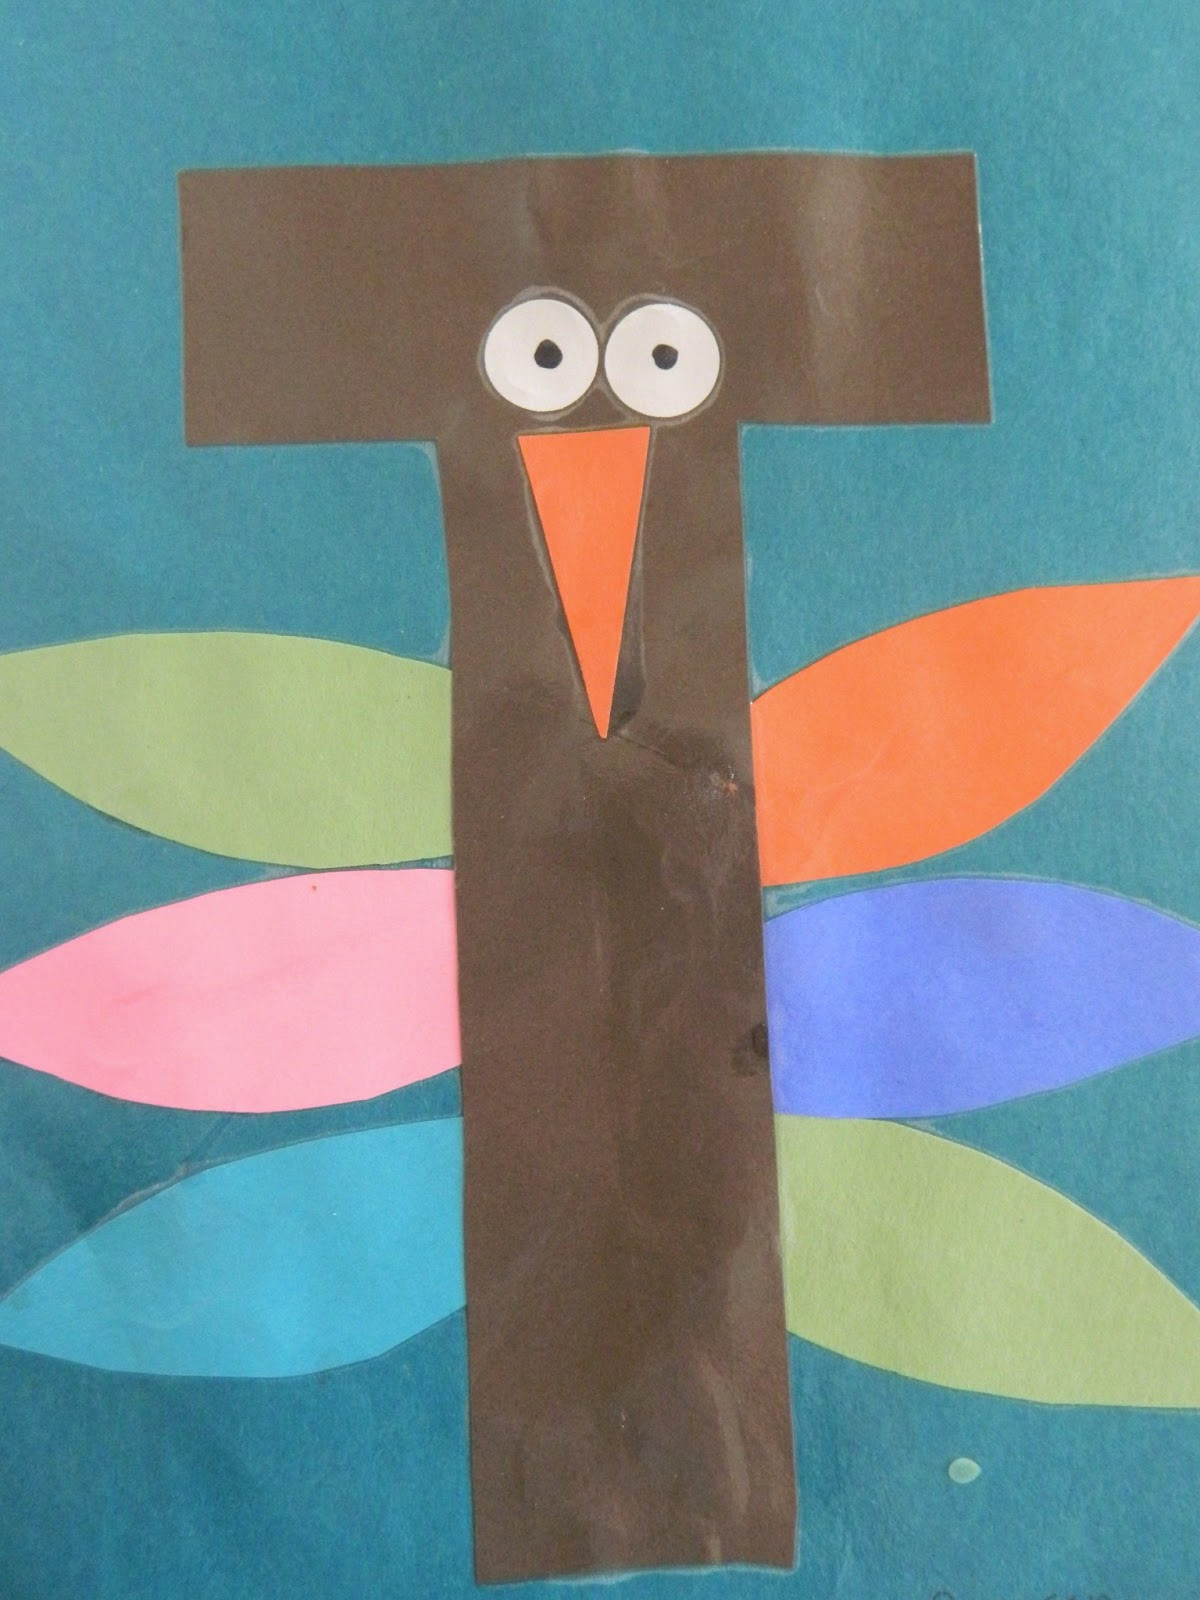 I Crafts For Preschoolers
 the vintage umbrella Preschool Alphabet projects Q Z